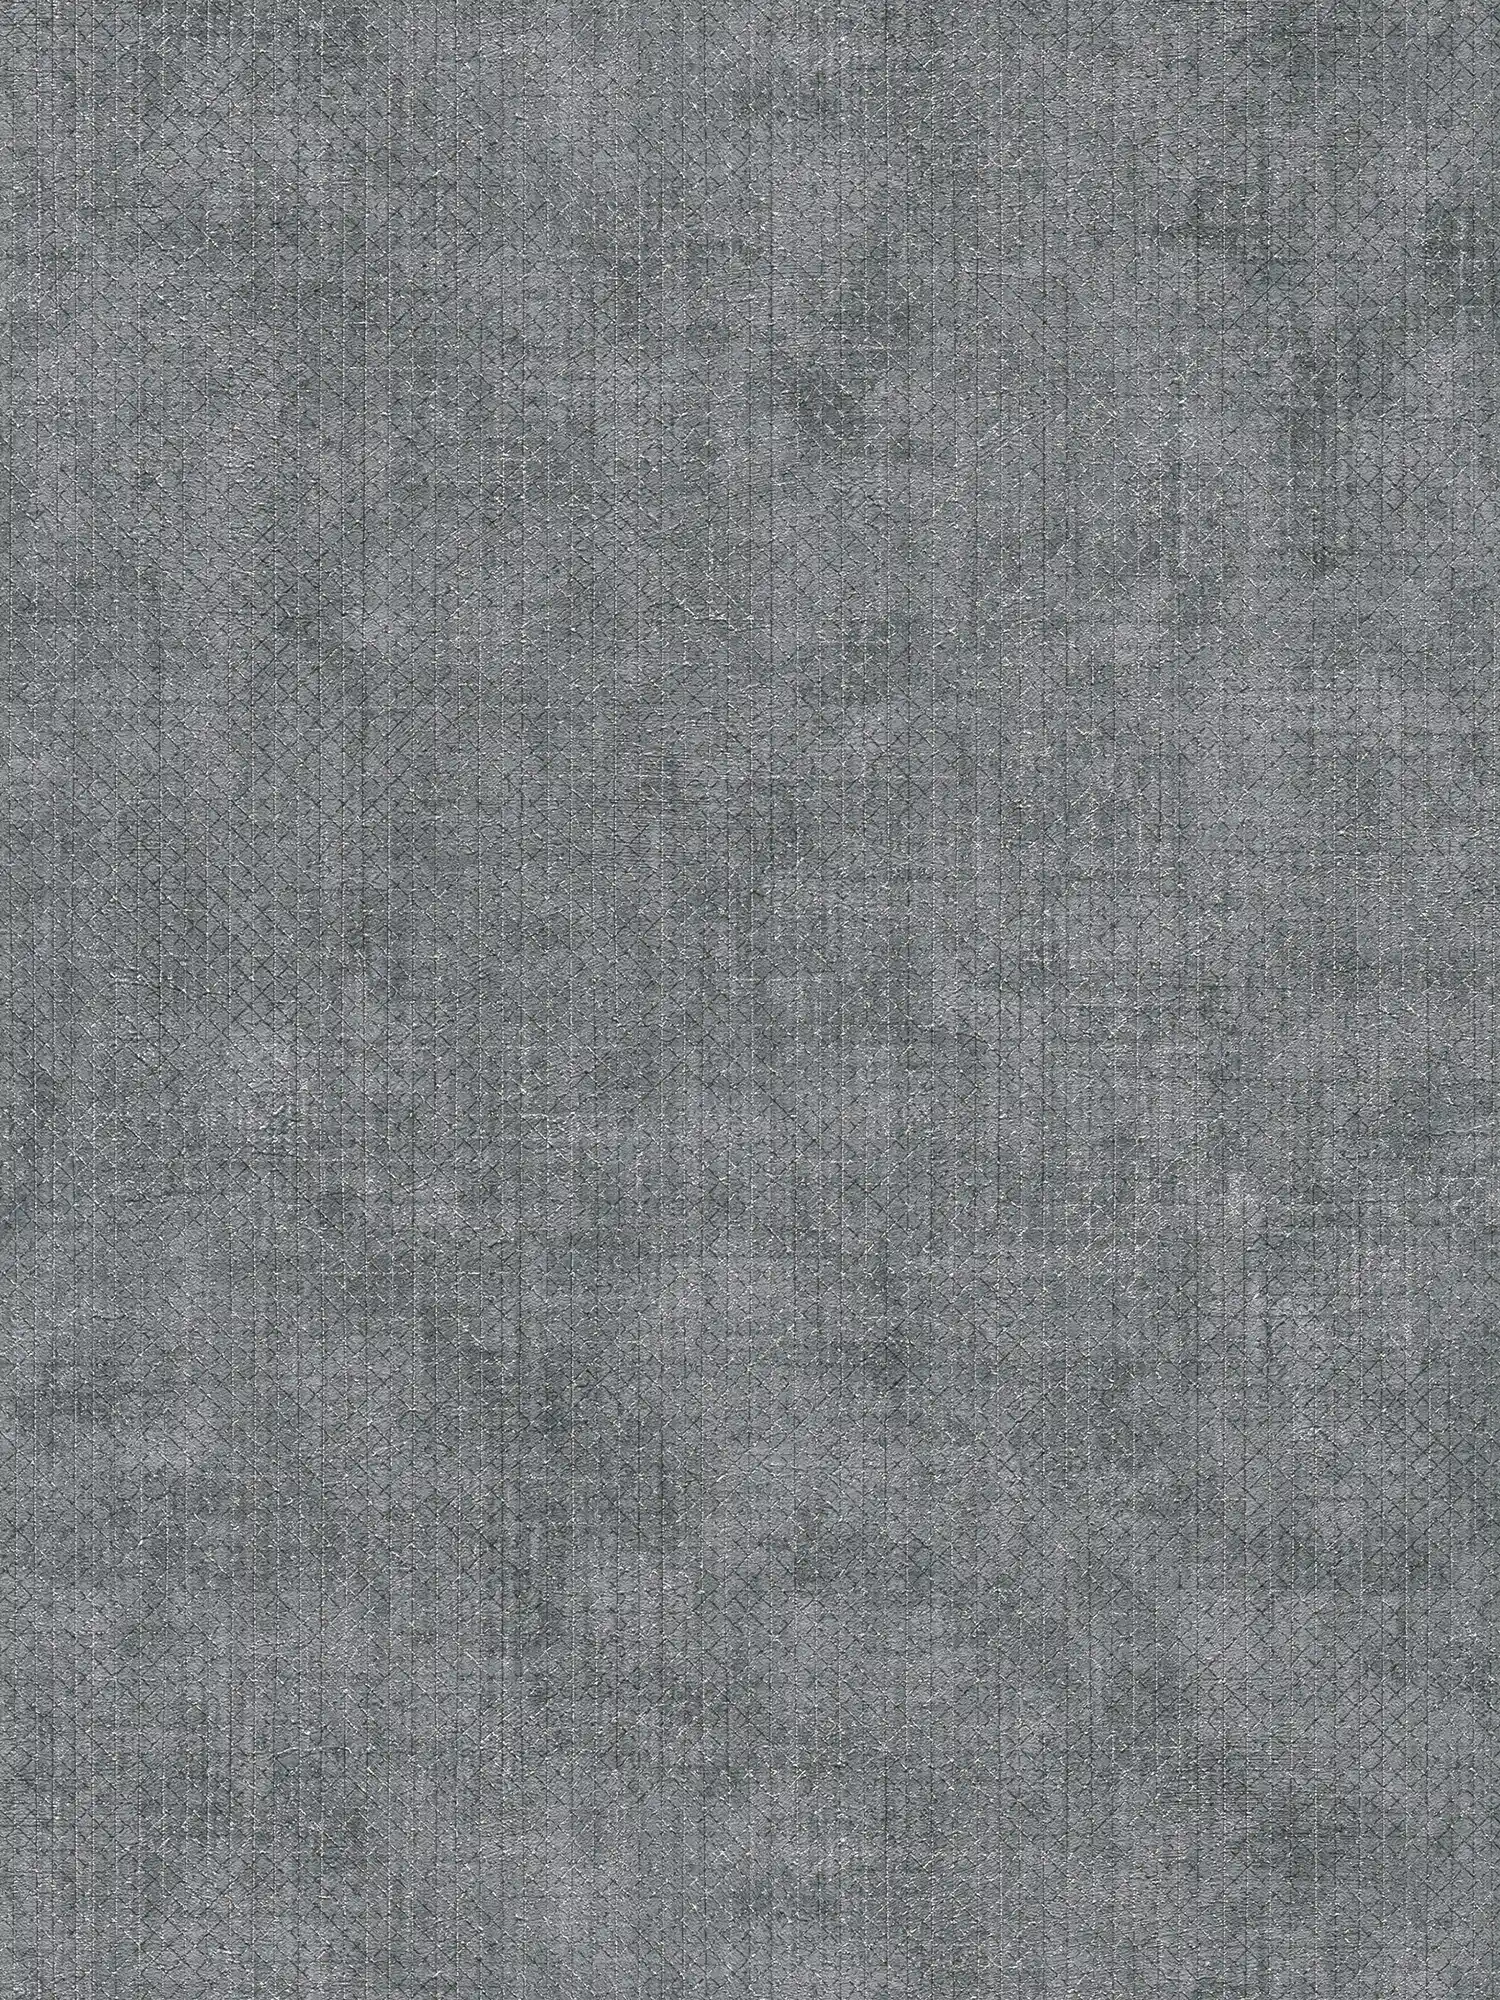 Papier peint gris foncé chiné avec motif de lignes métalliques
